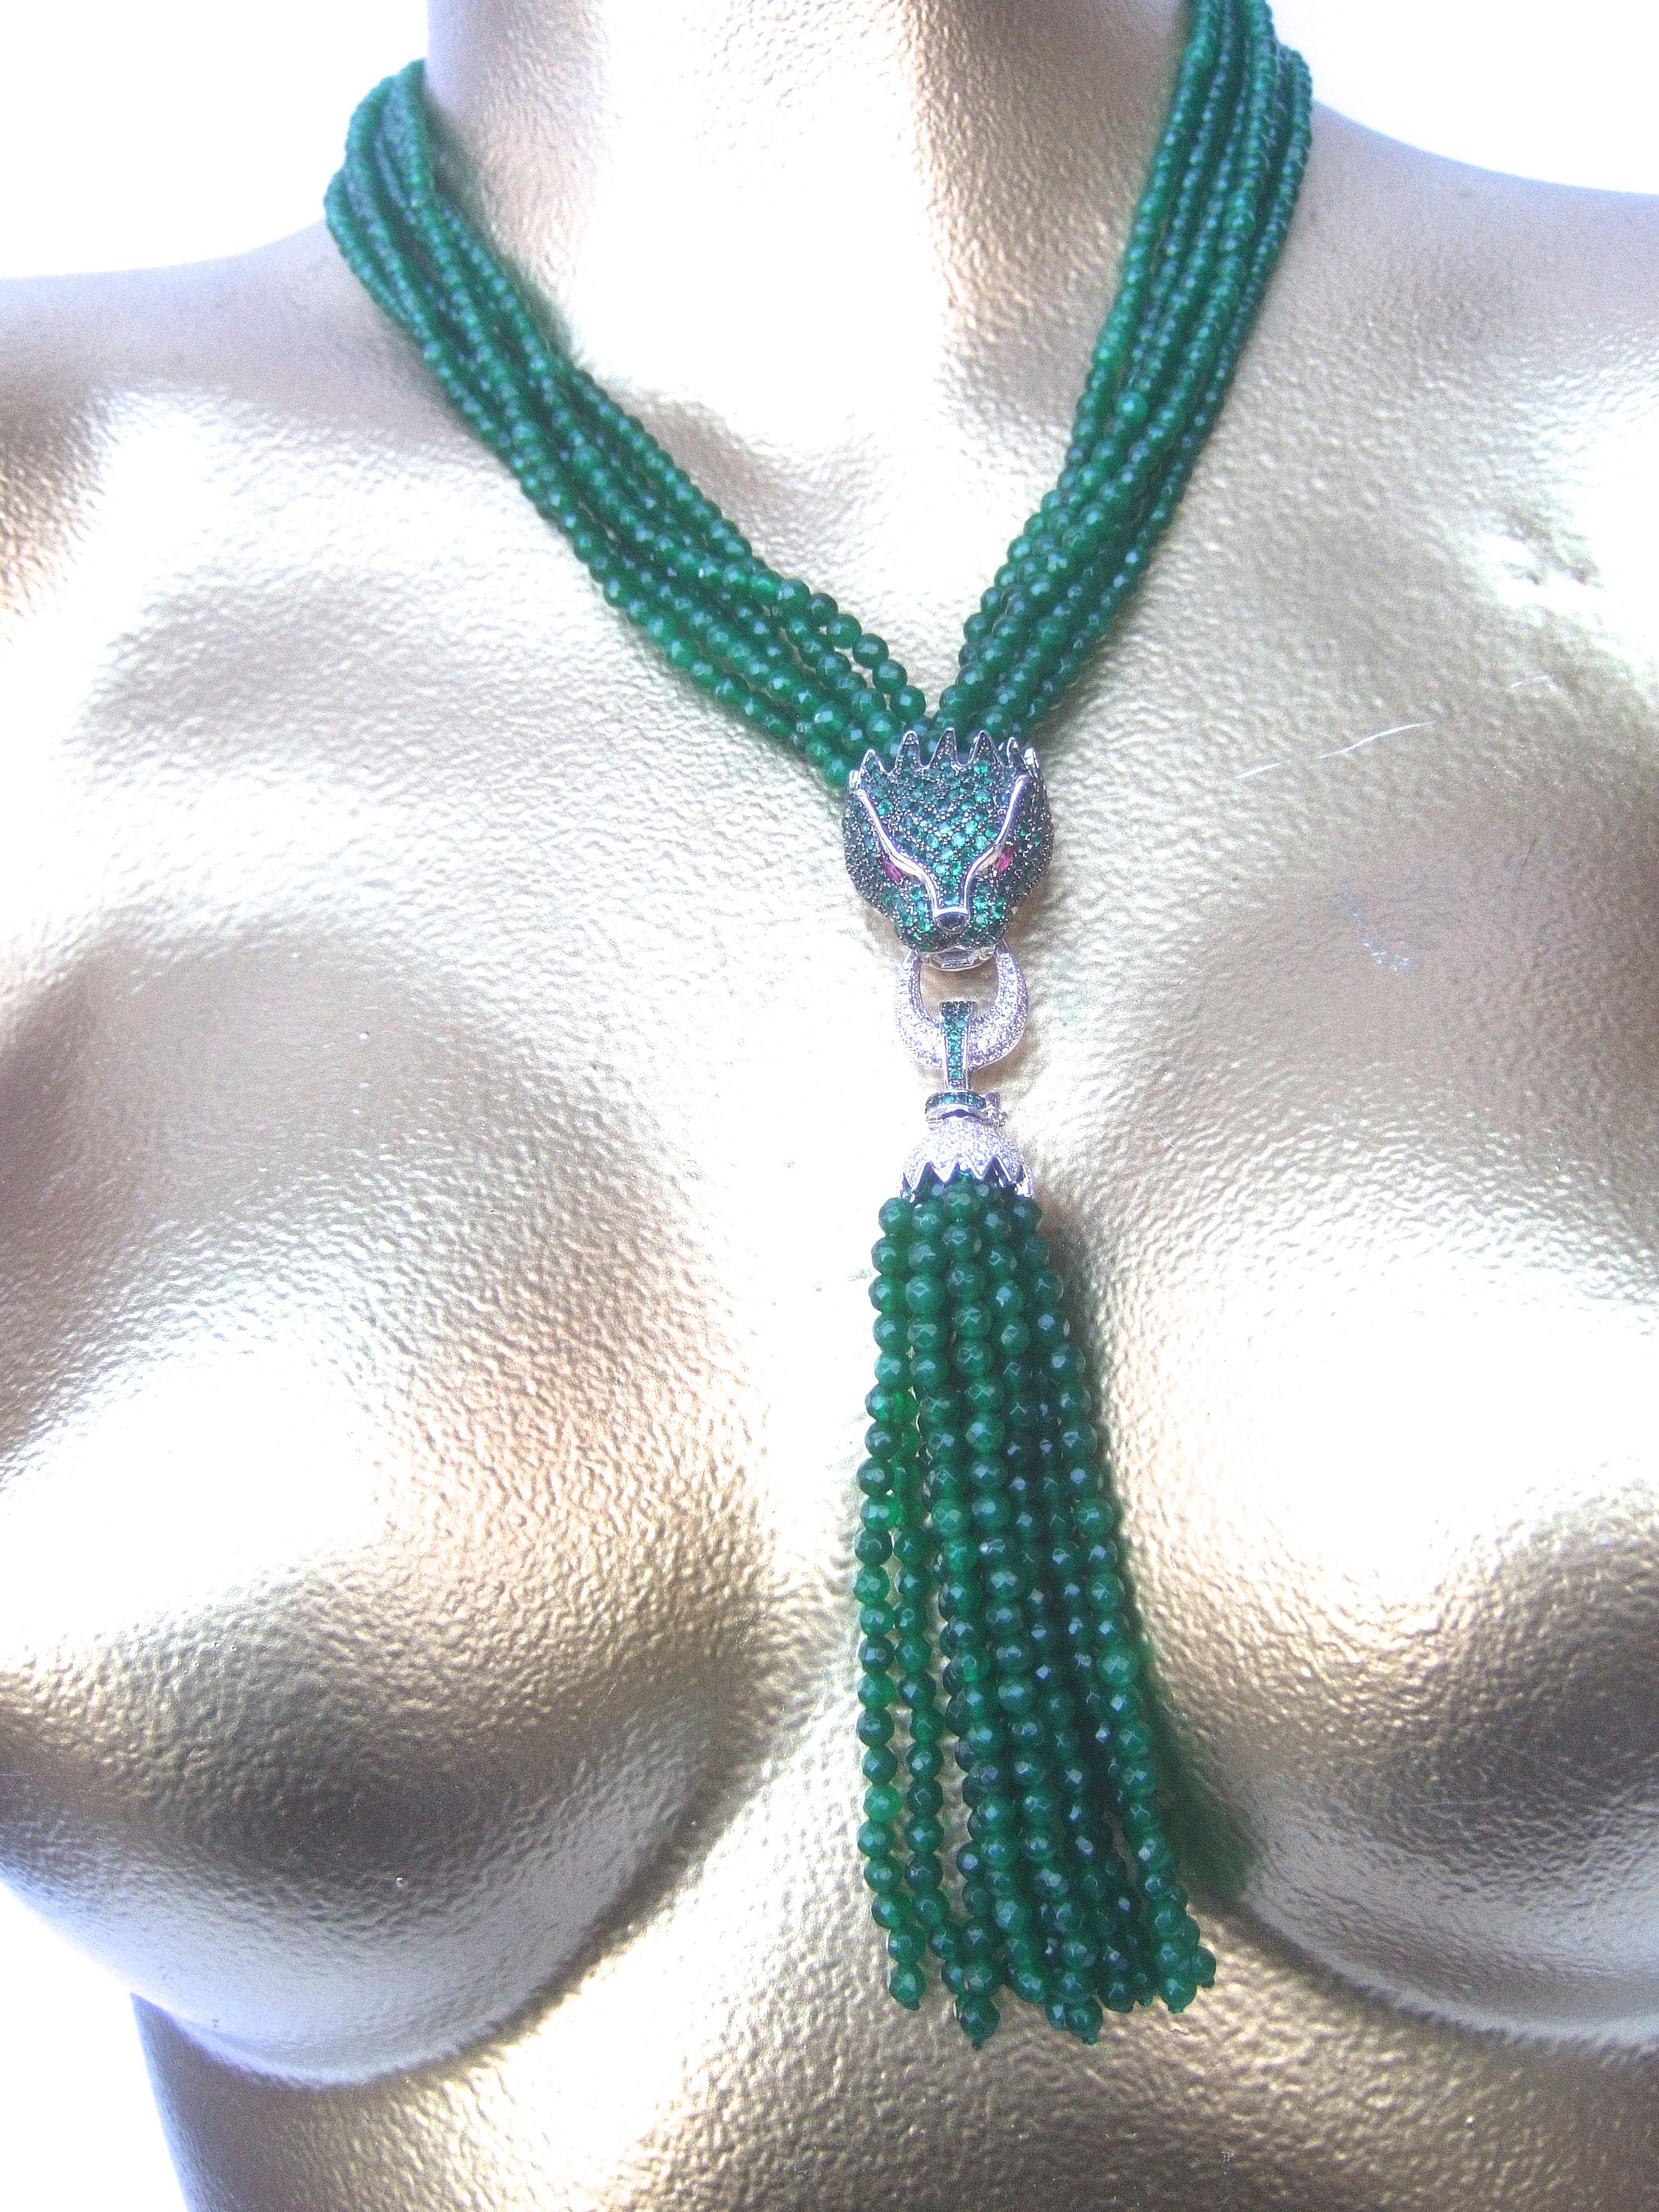 Opulent collier à glands en cristal vert tête de panthère c. 1990
L'élégant collier est orné d'une tête de félin incrustée
avec des rangées de minuscules cristaux verts 